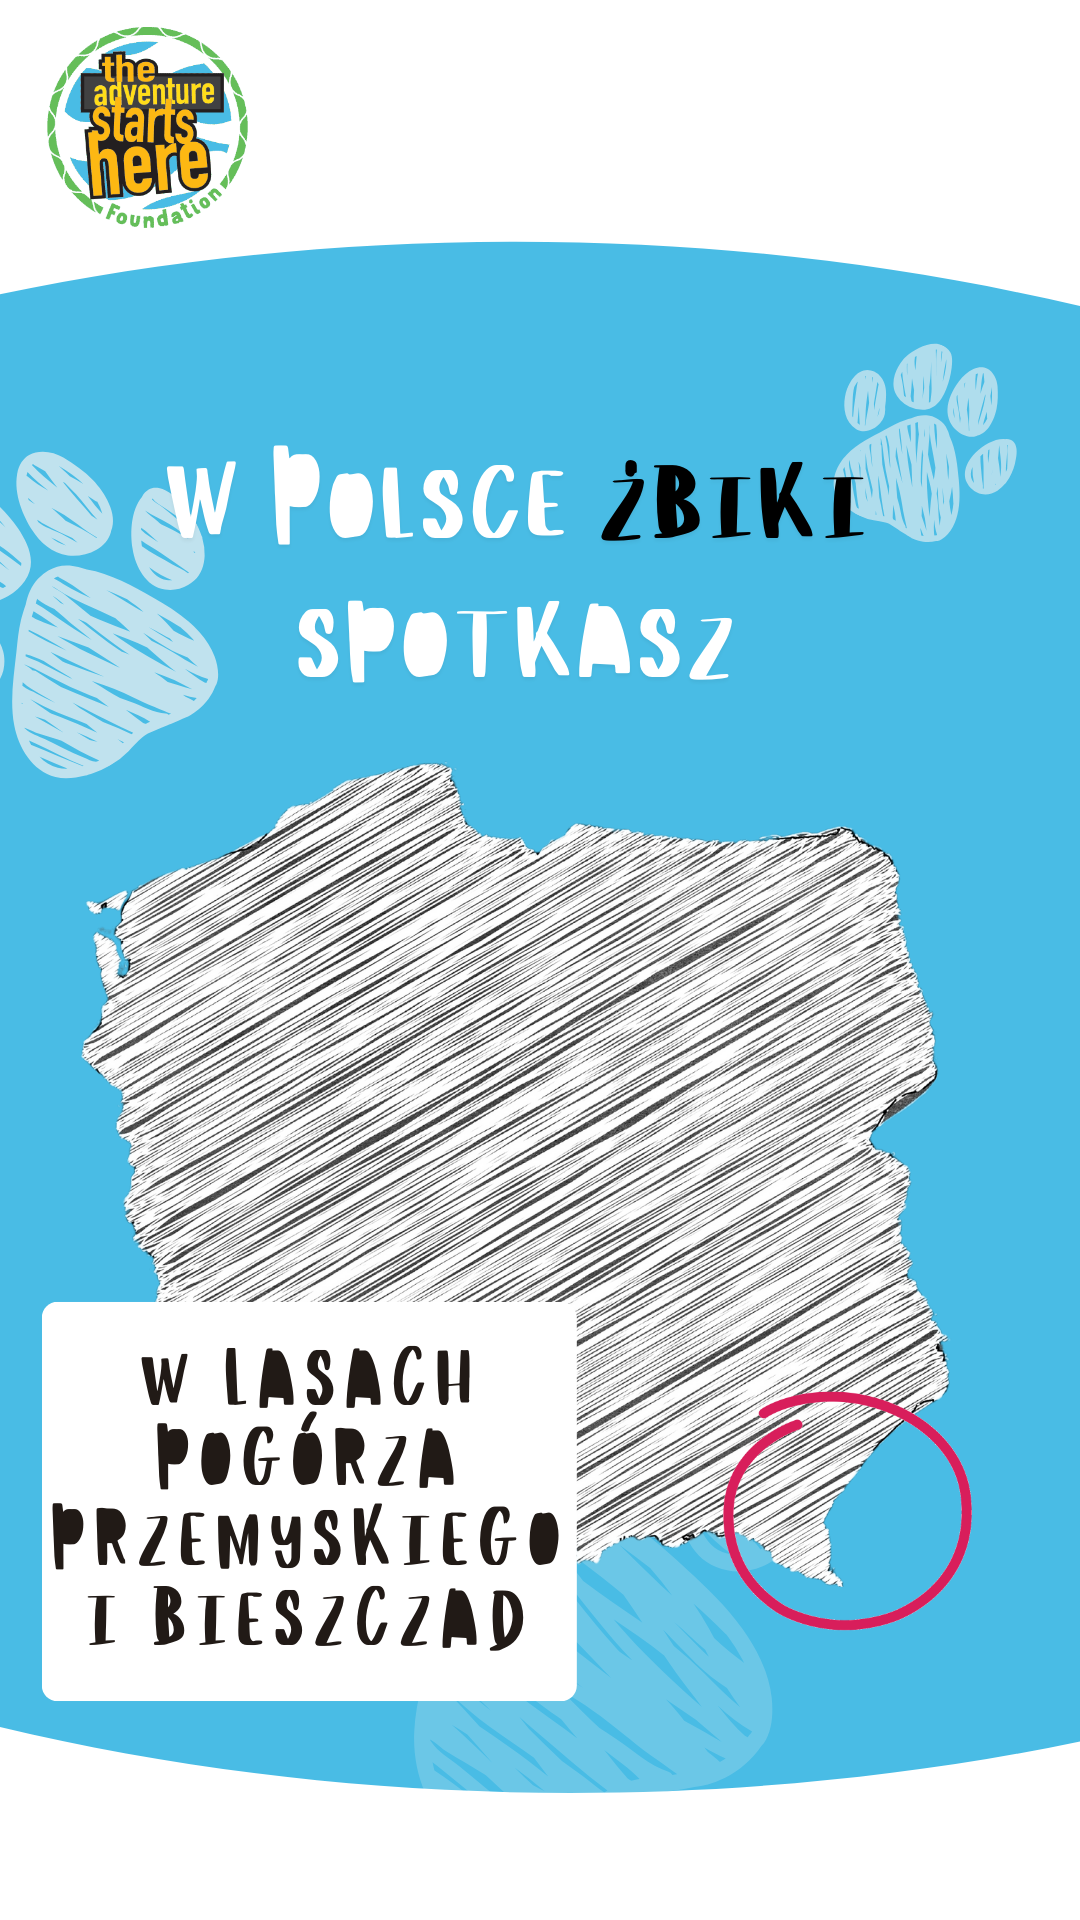 Luty miesiącem żbika w Polsce